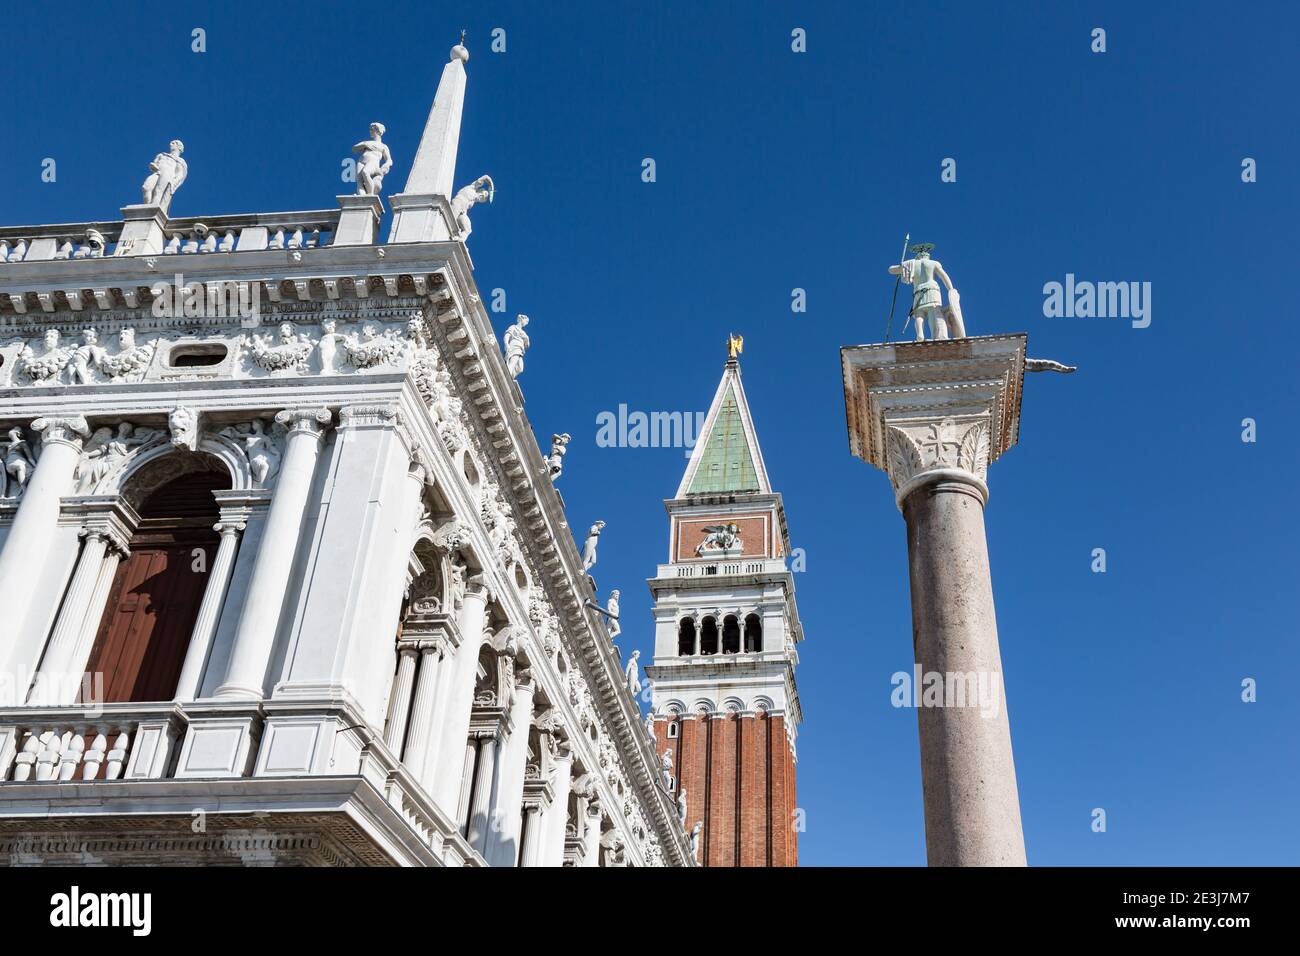 Vue sur le bâtiment de la bibliothèque nationale, le Campanile et la colonne de Saint-Théodore sur la place Saint-Marc, Venise, Italie Banque D'Images